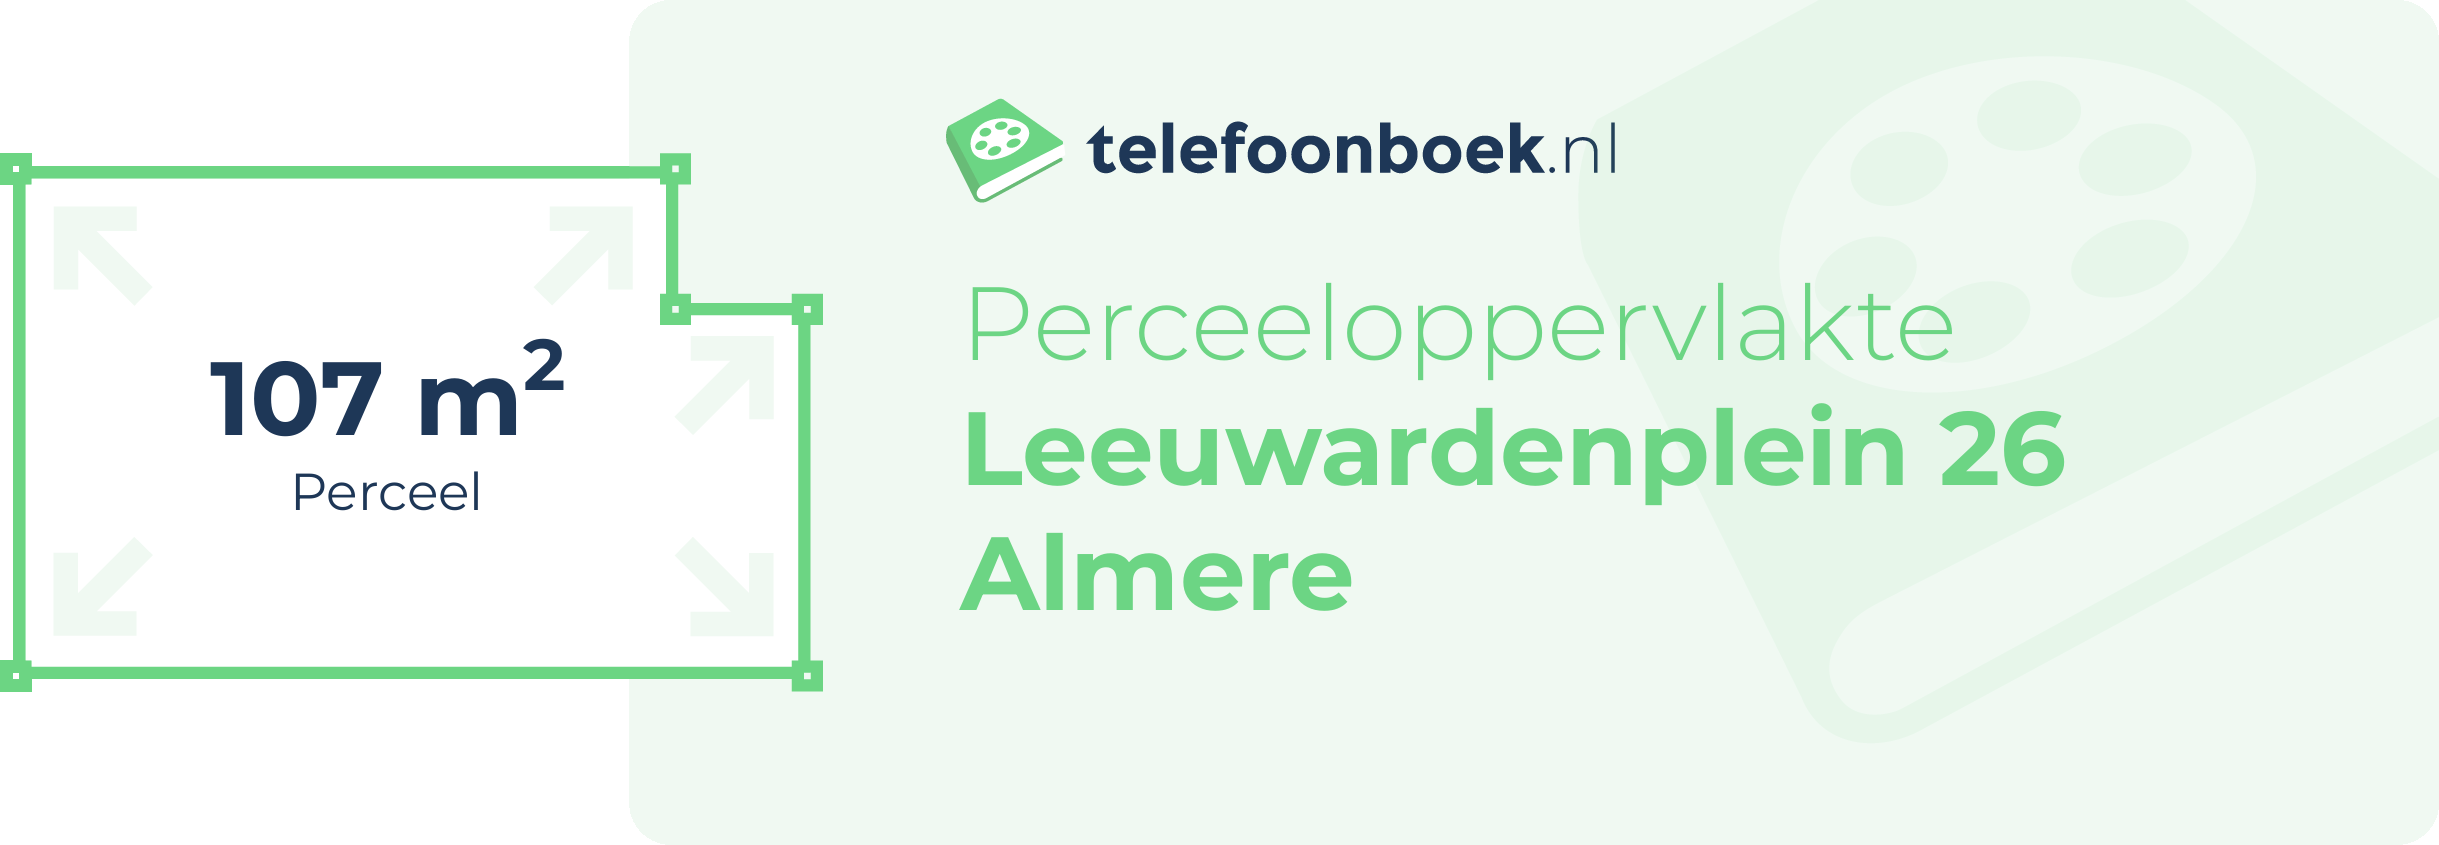 Perceeloppervlakte Leeuwardenplein 26 Almere